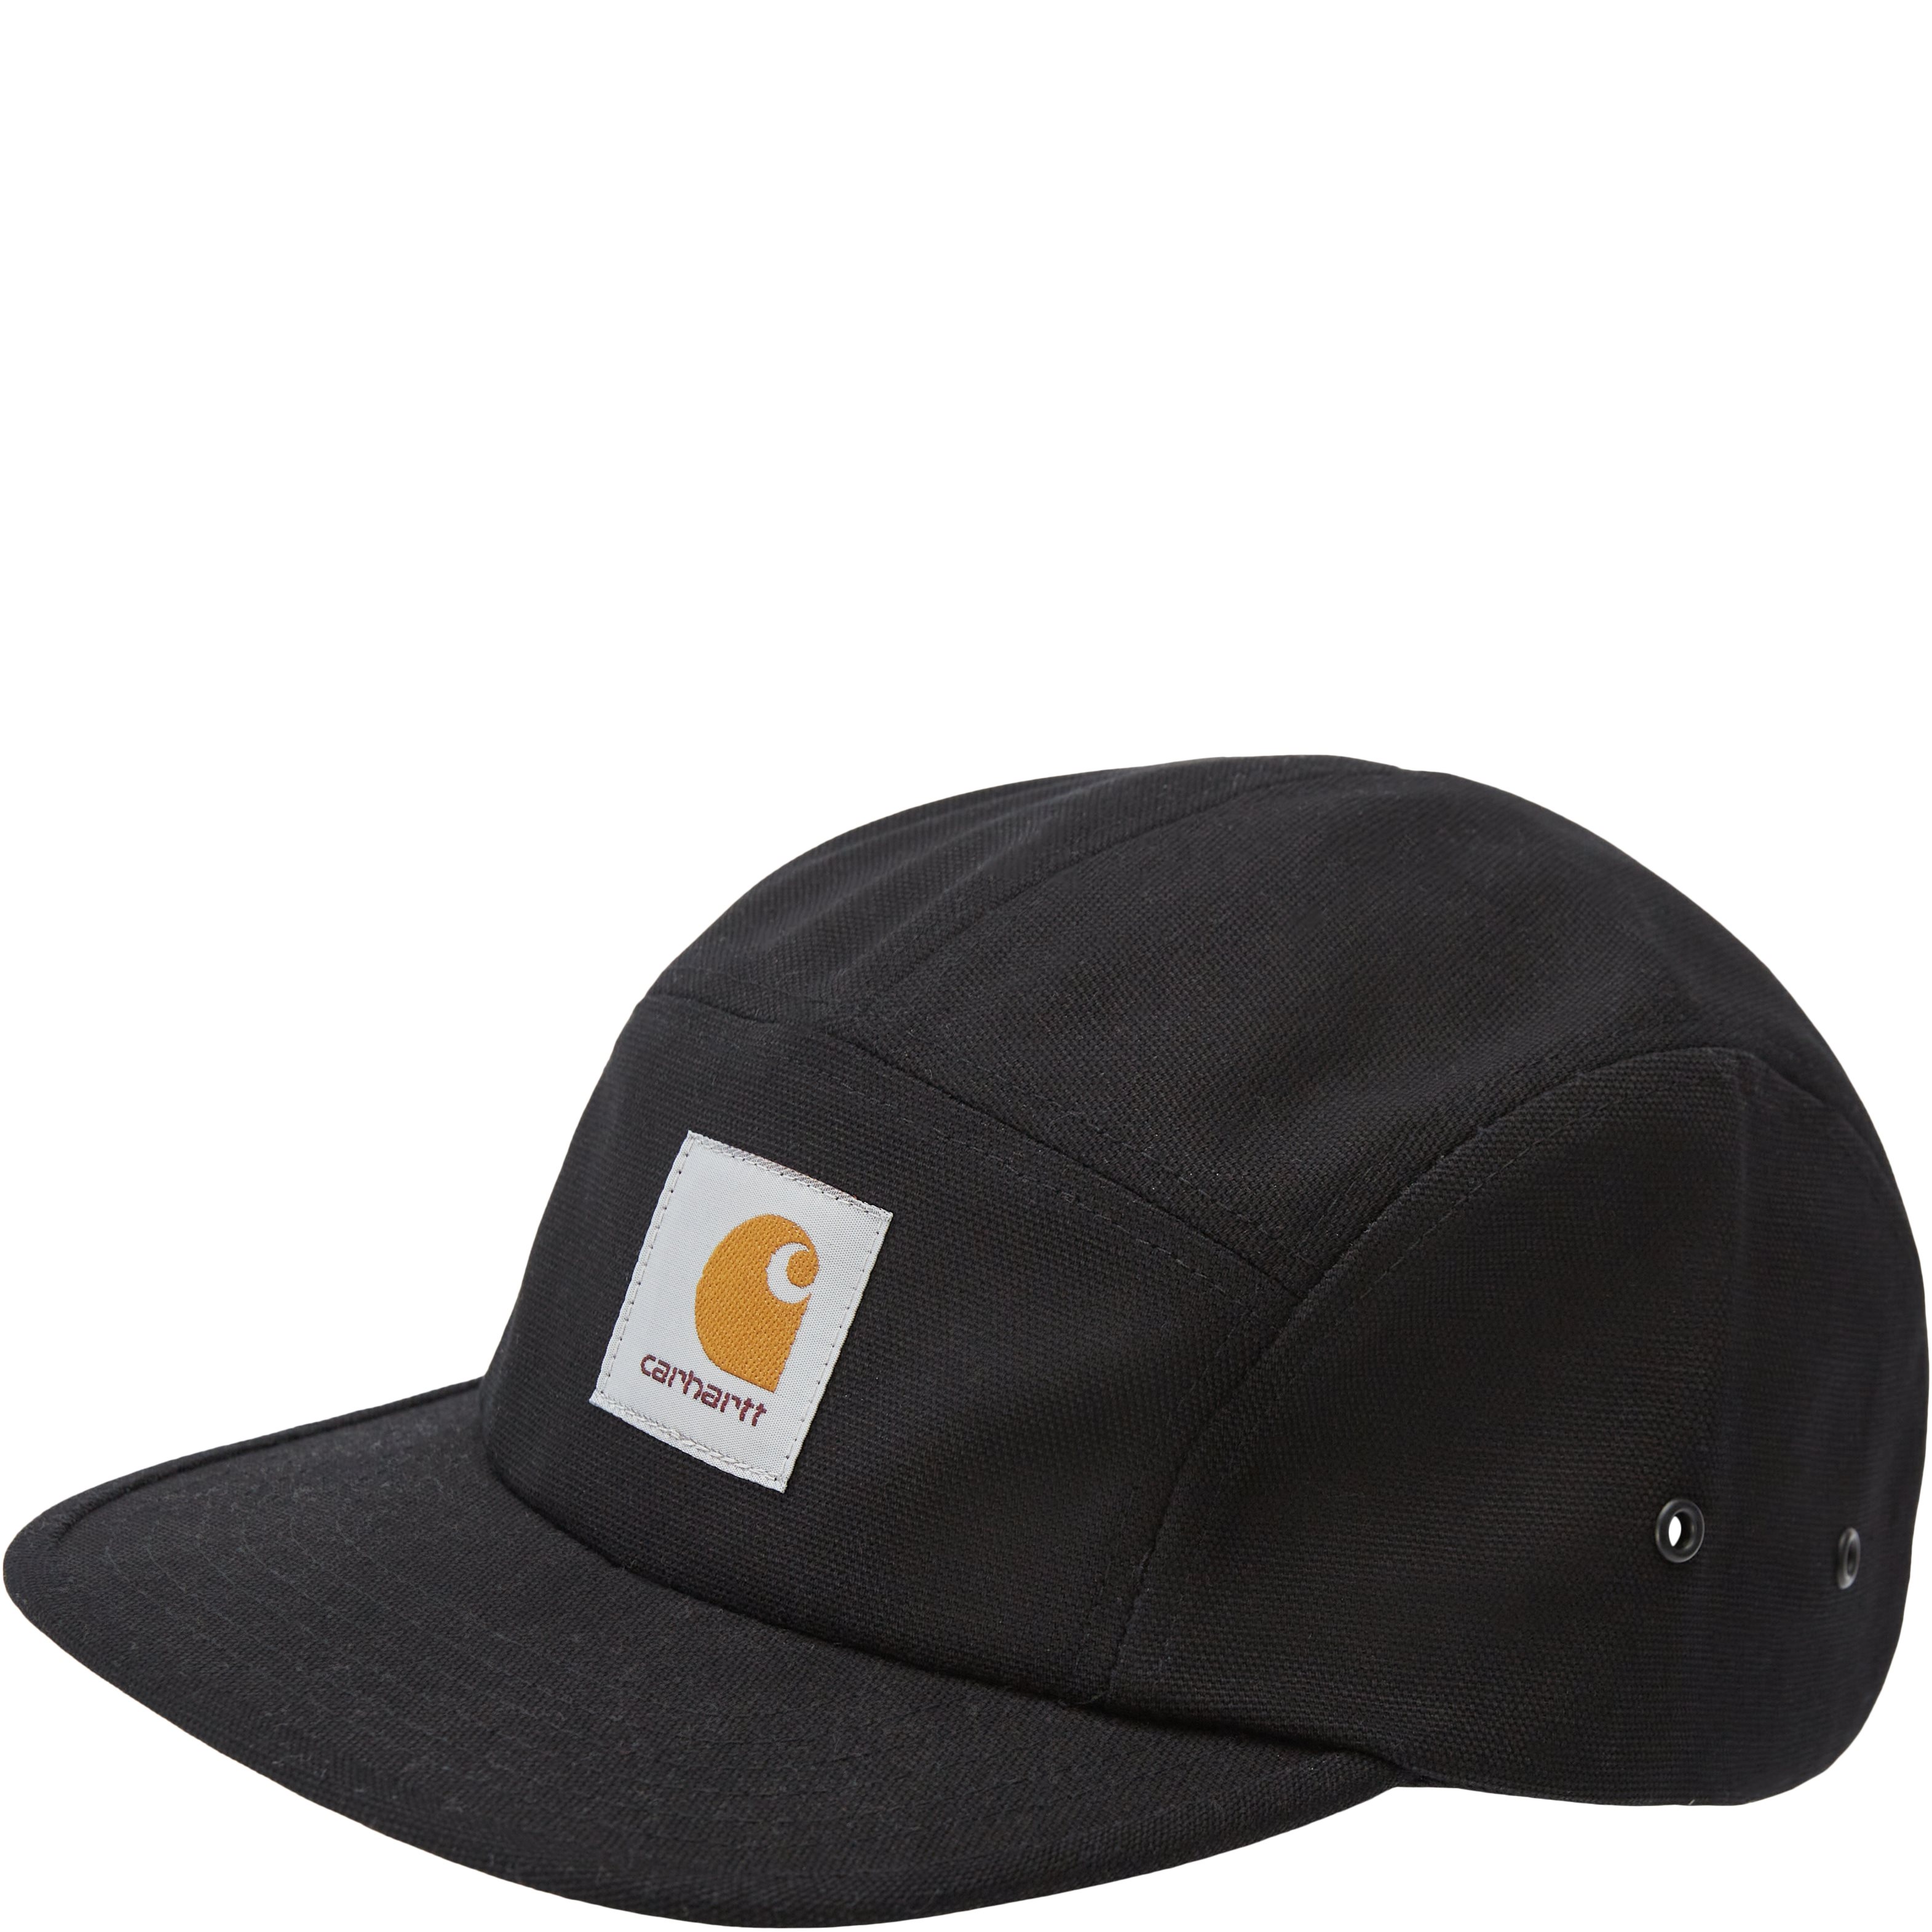 Backley Cap I016607 - Caps - Black